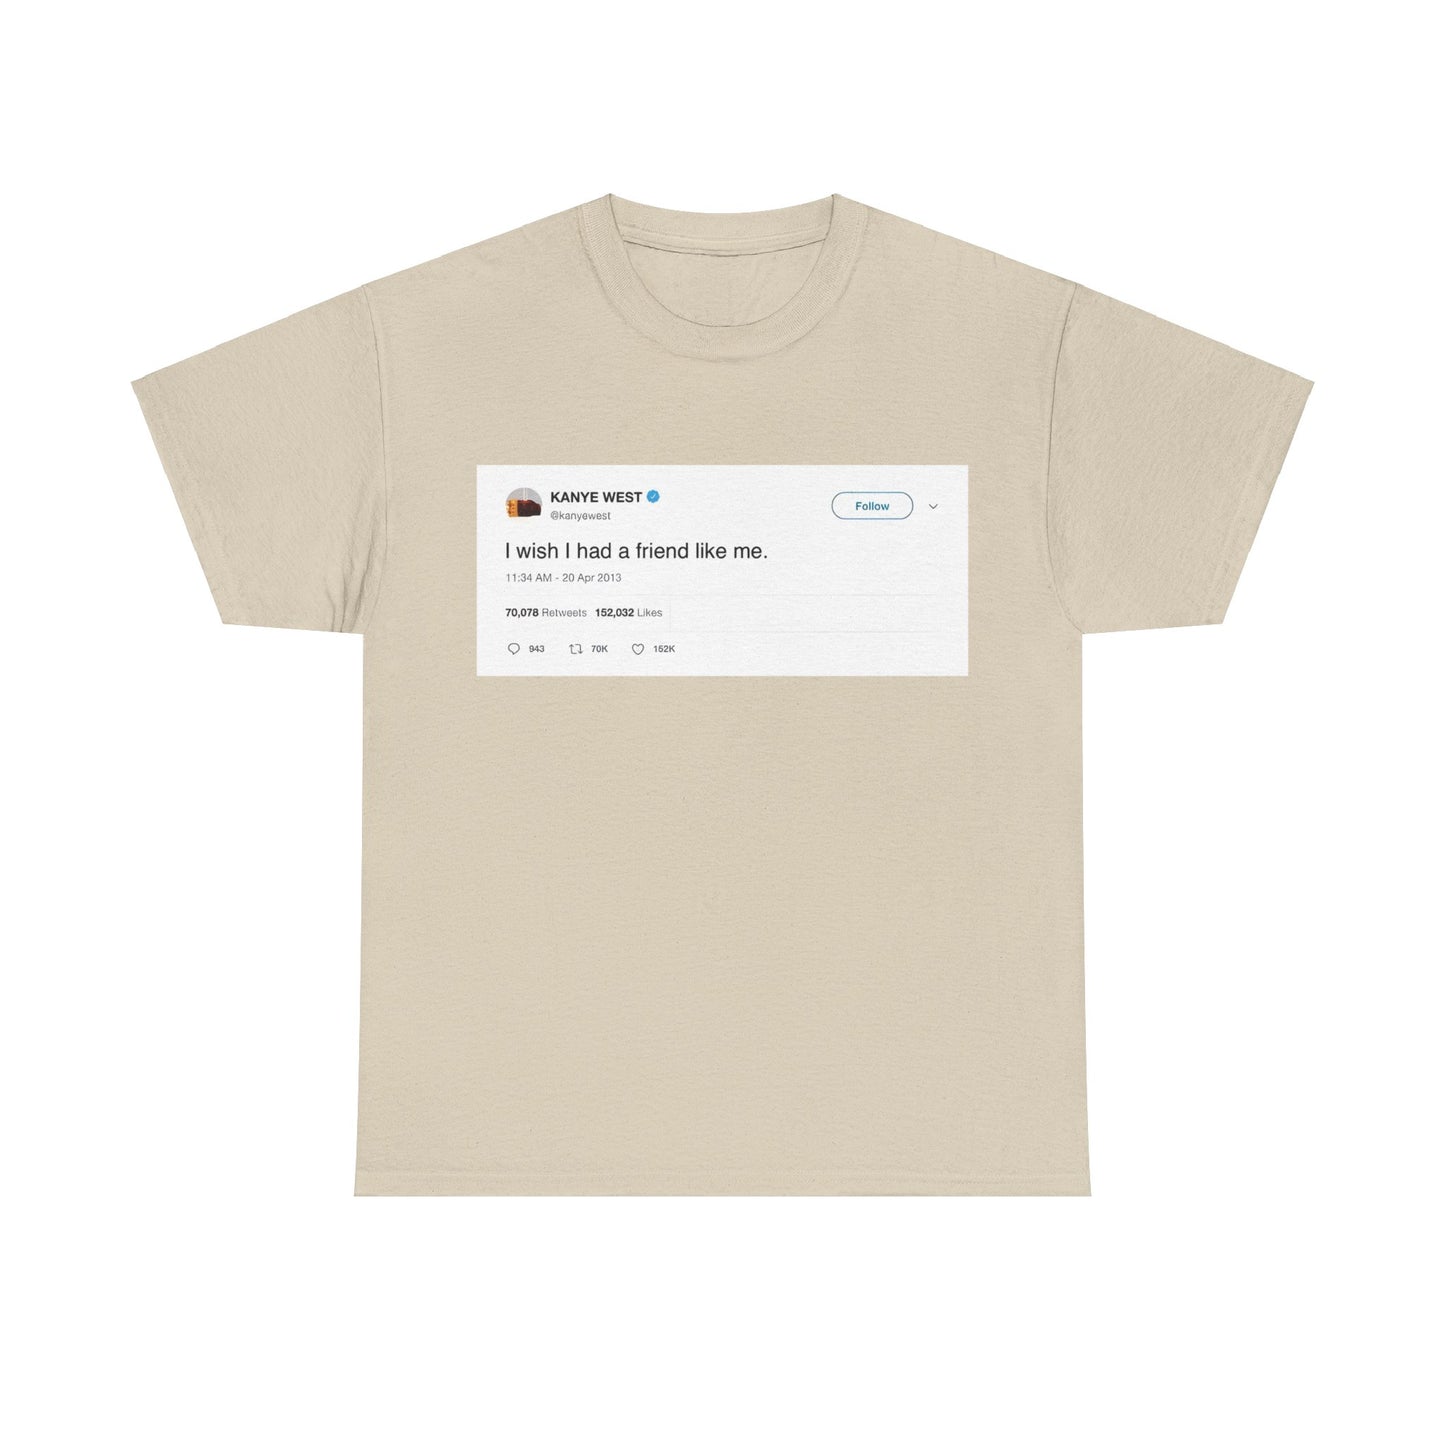 Unser "I wish I had a friend like me" T-Shirt, inspiriert von Kanye Wests berühmtem Twitter-Post, ist ein Muss für alle Kanye West-Fans! Perfekt für Social Media Liebhaber und Rap Fans Geschenk. Zeige deinen Style und deine Liebe zu YE Album mit diesem einzigartigen Shirt. Ideal für Streetwear und Hip-Hop Fashion.